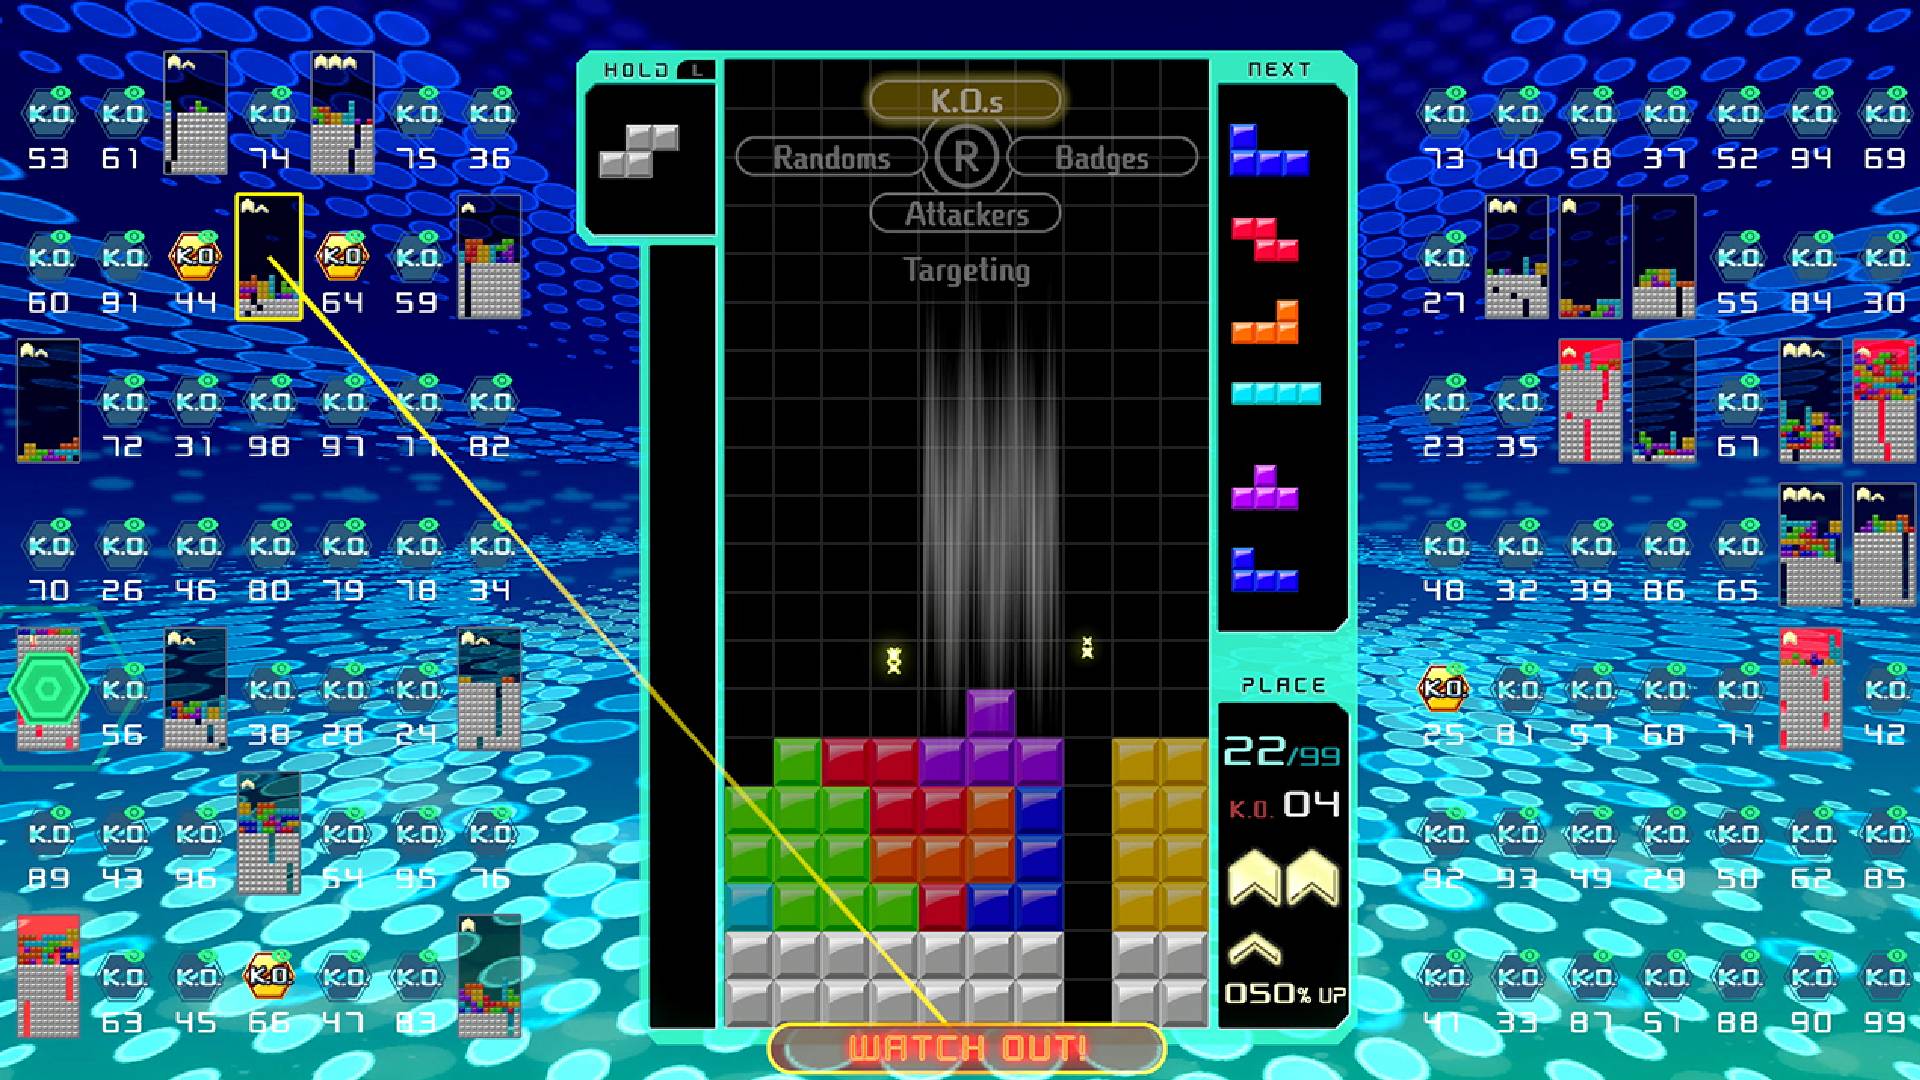 Es wird ein Tetris-Spiel gespielt, während 98 weitere Tetris-Spiele um das Hauptdisplay herum angezeigt werden.